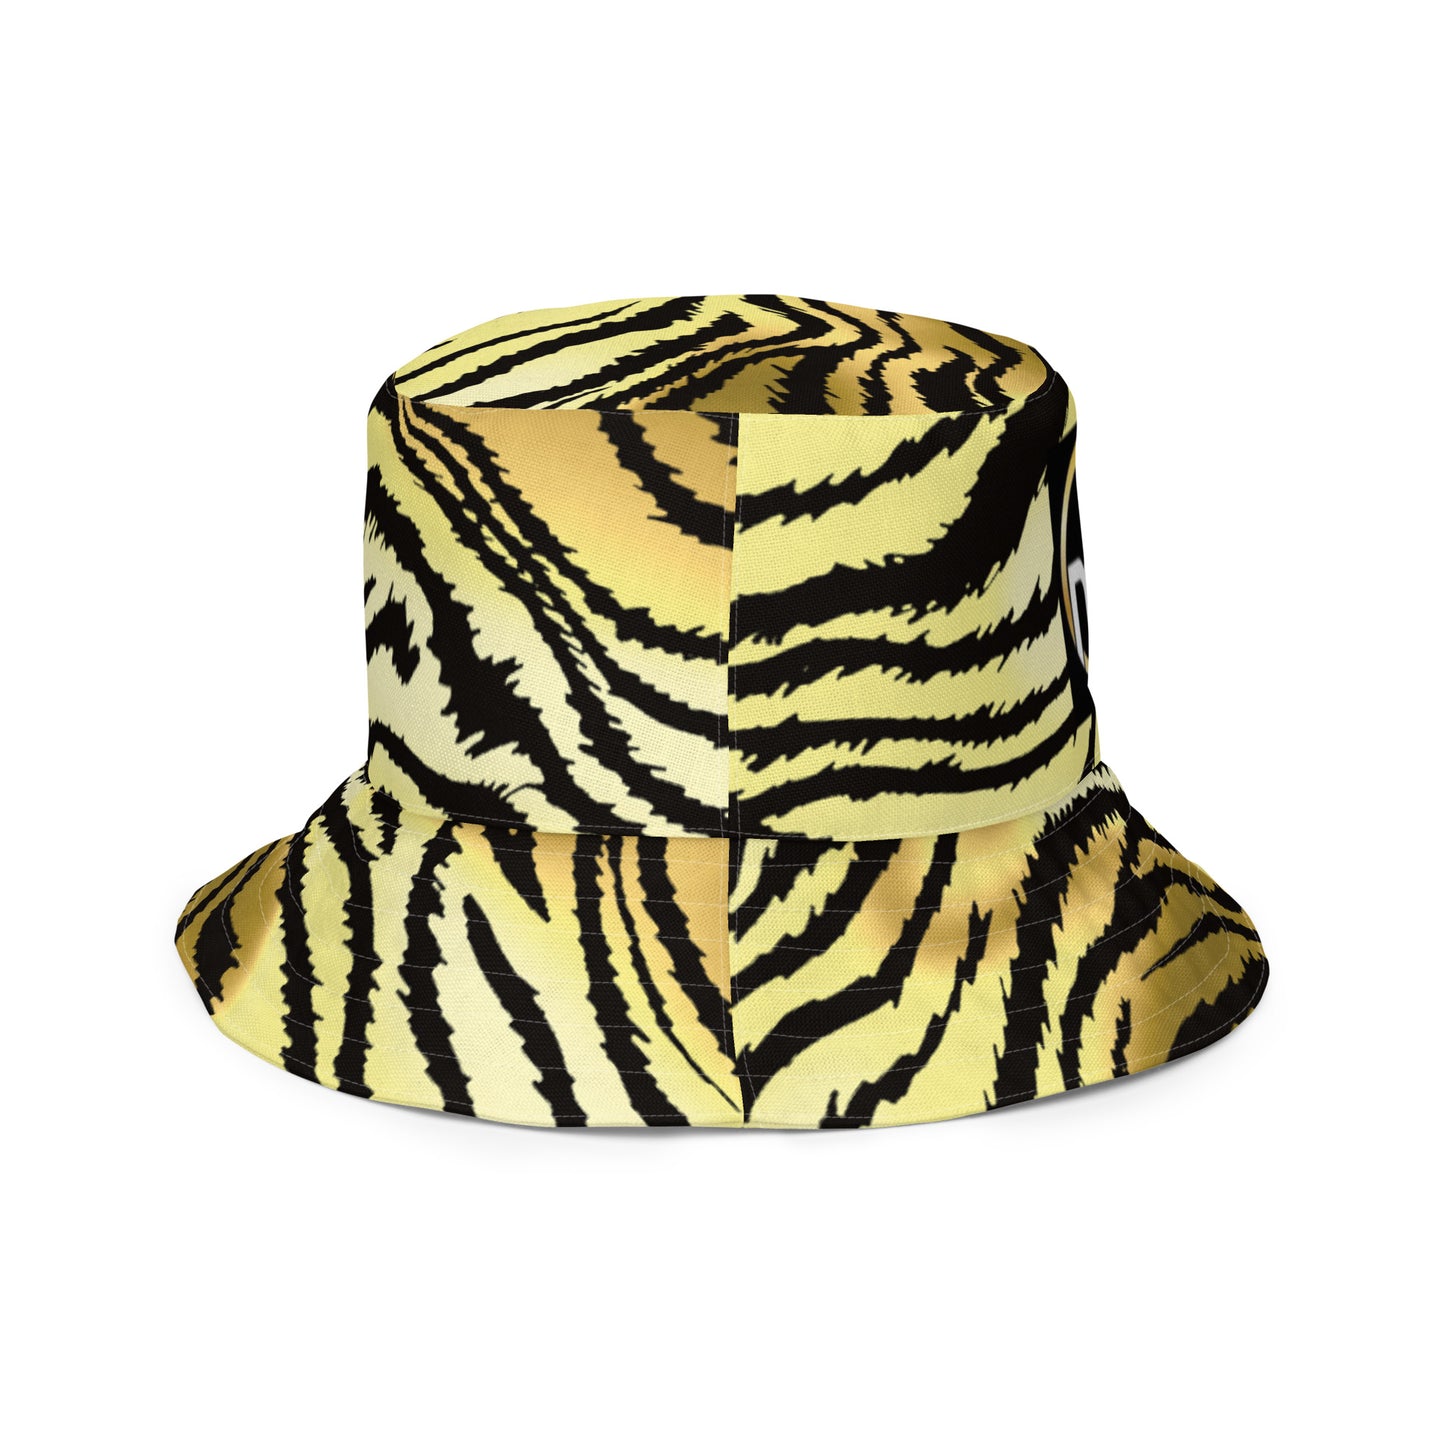 YCSWU bucket hat - yellow